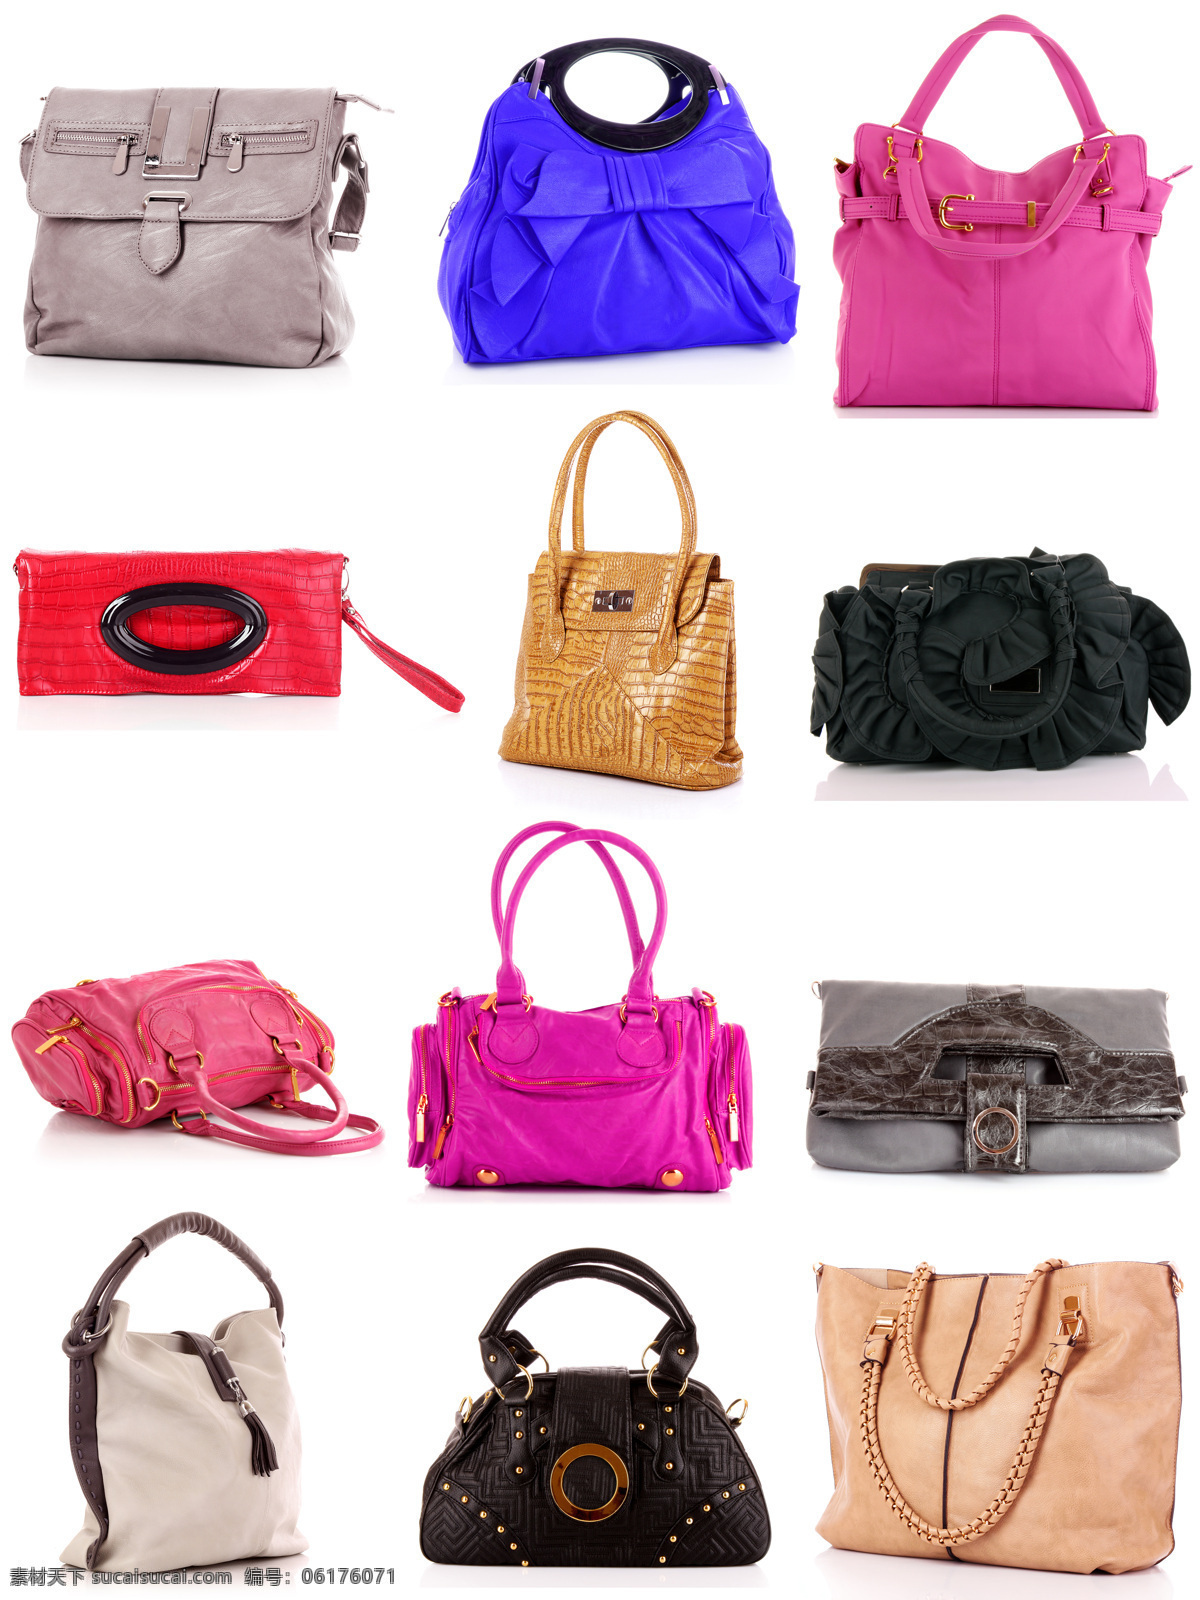 五颜六色 手提袋 时尚 手提包 包包 皮包 女士包 各式包包 包装设计 生活用品 珠宝服饰 生活百科